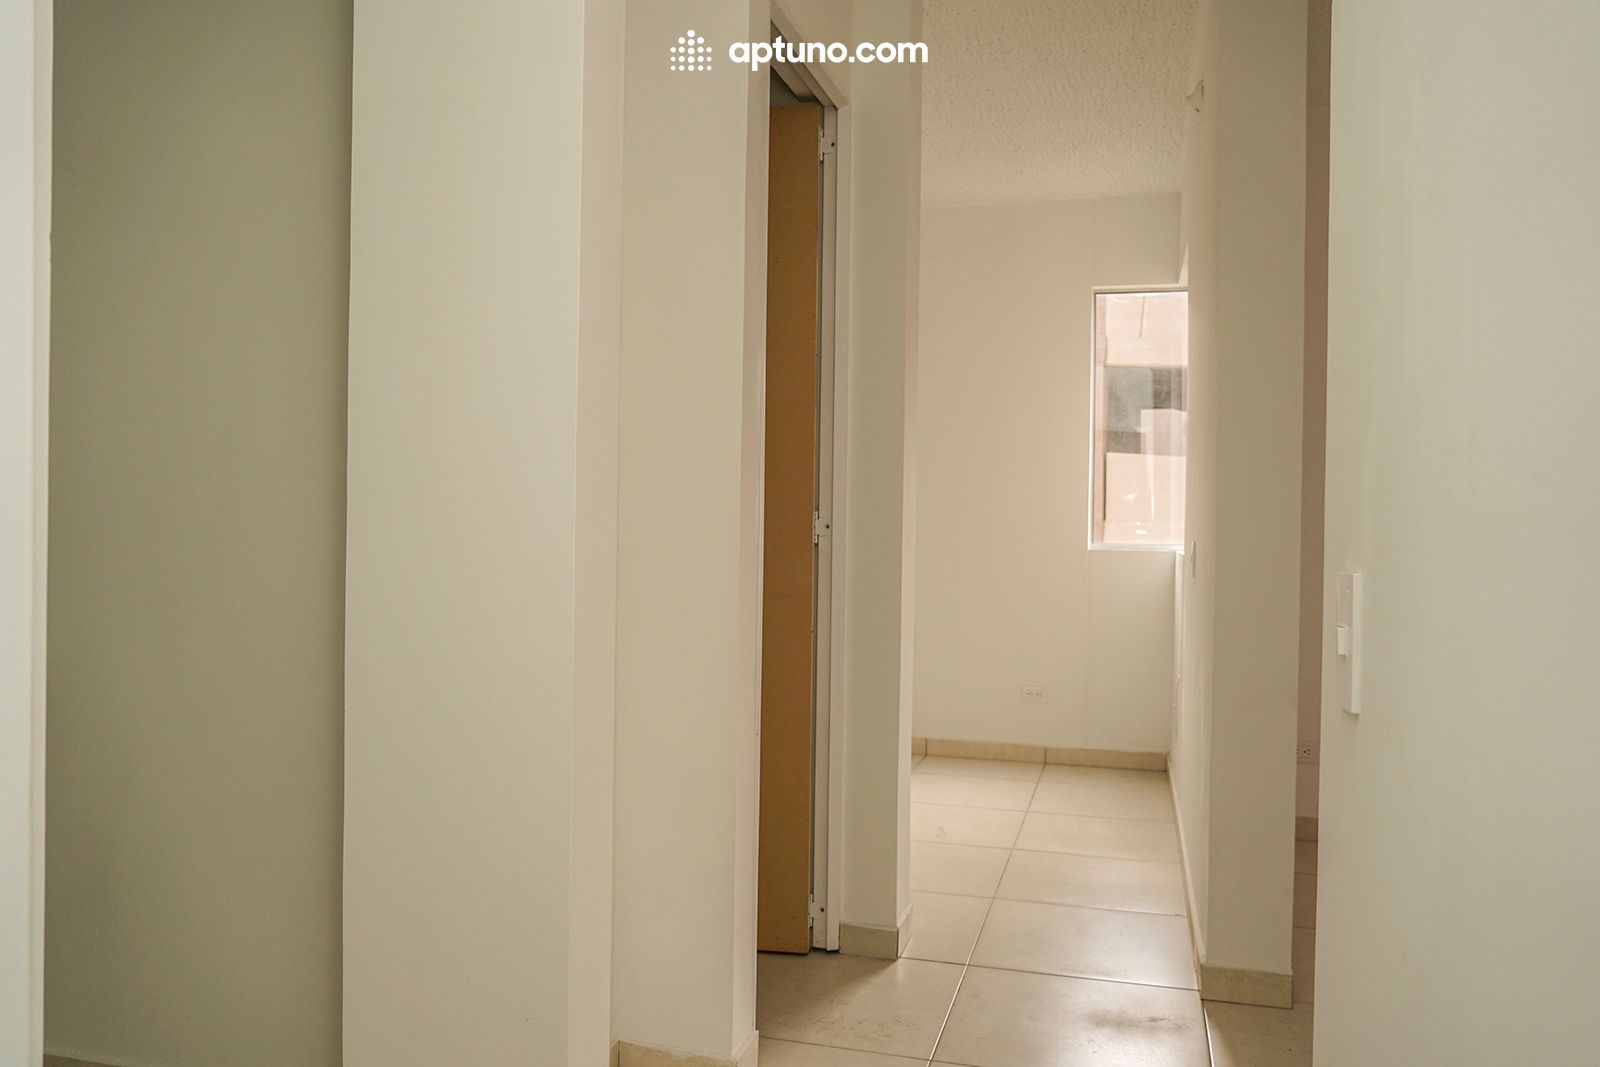 Apartamento en arriendo Arboleda Sur 40 m² - $ 950.000